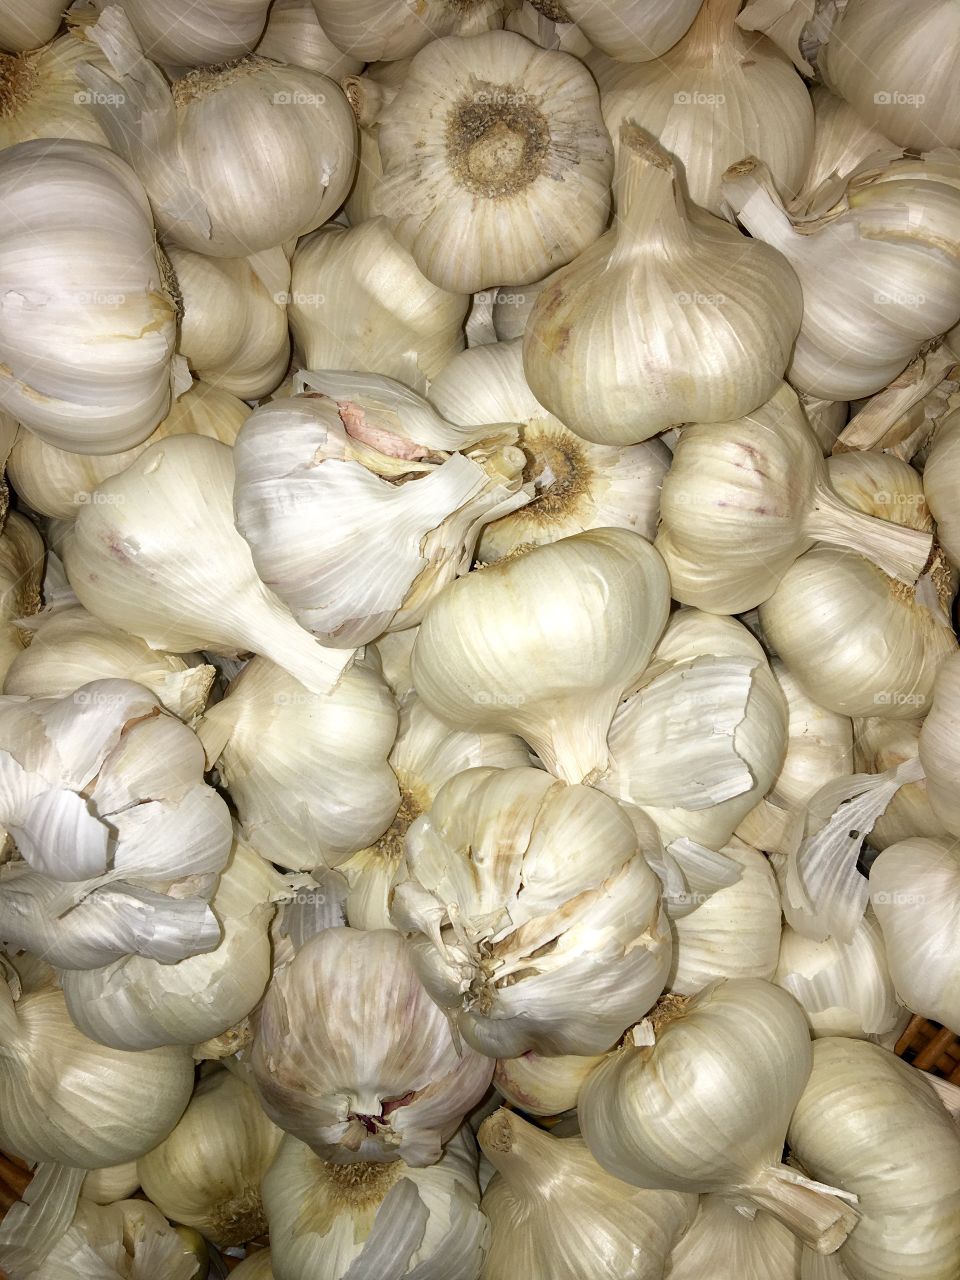 Garlic All Natural In A Bin